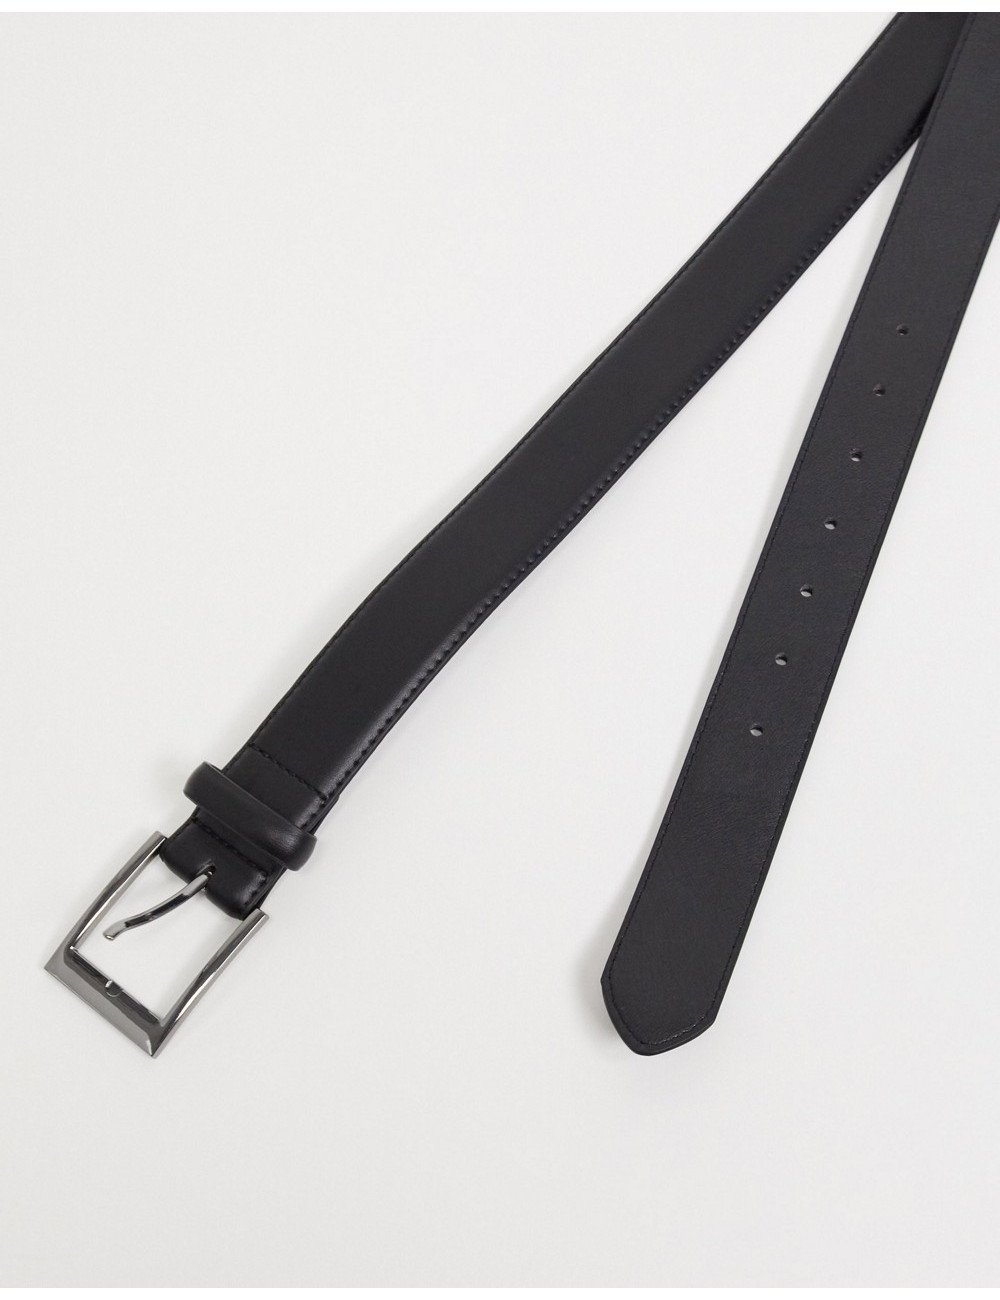 New Look smart belt in black